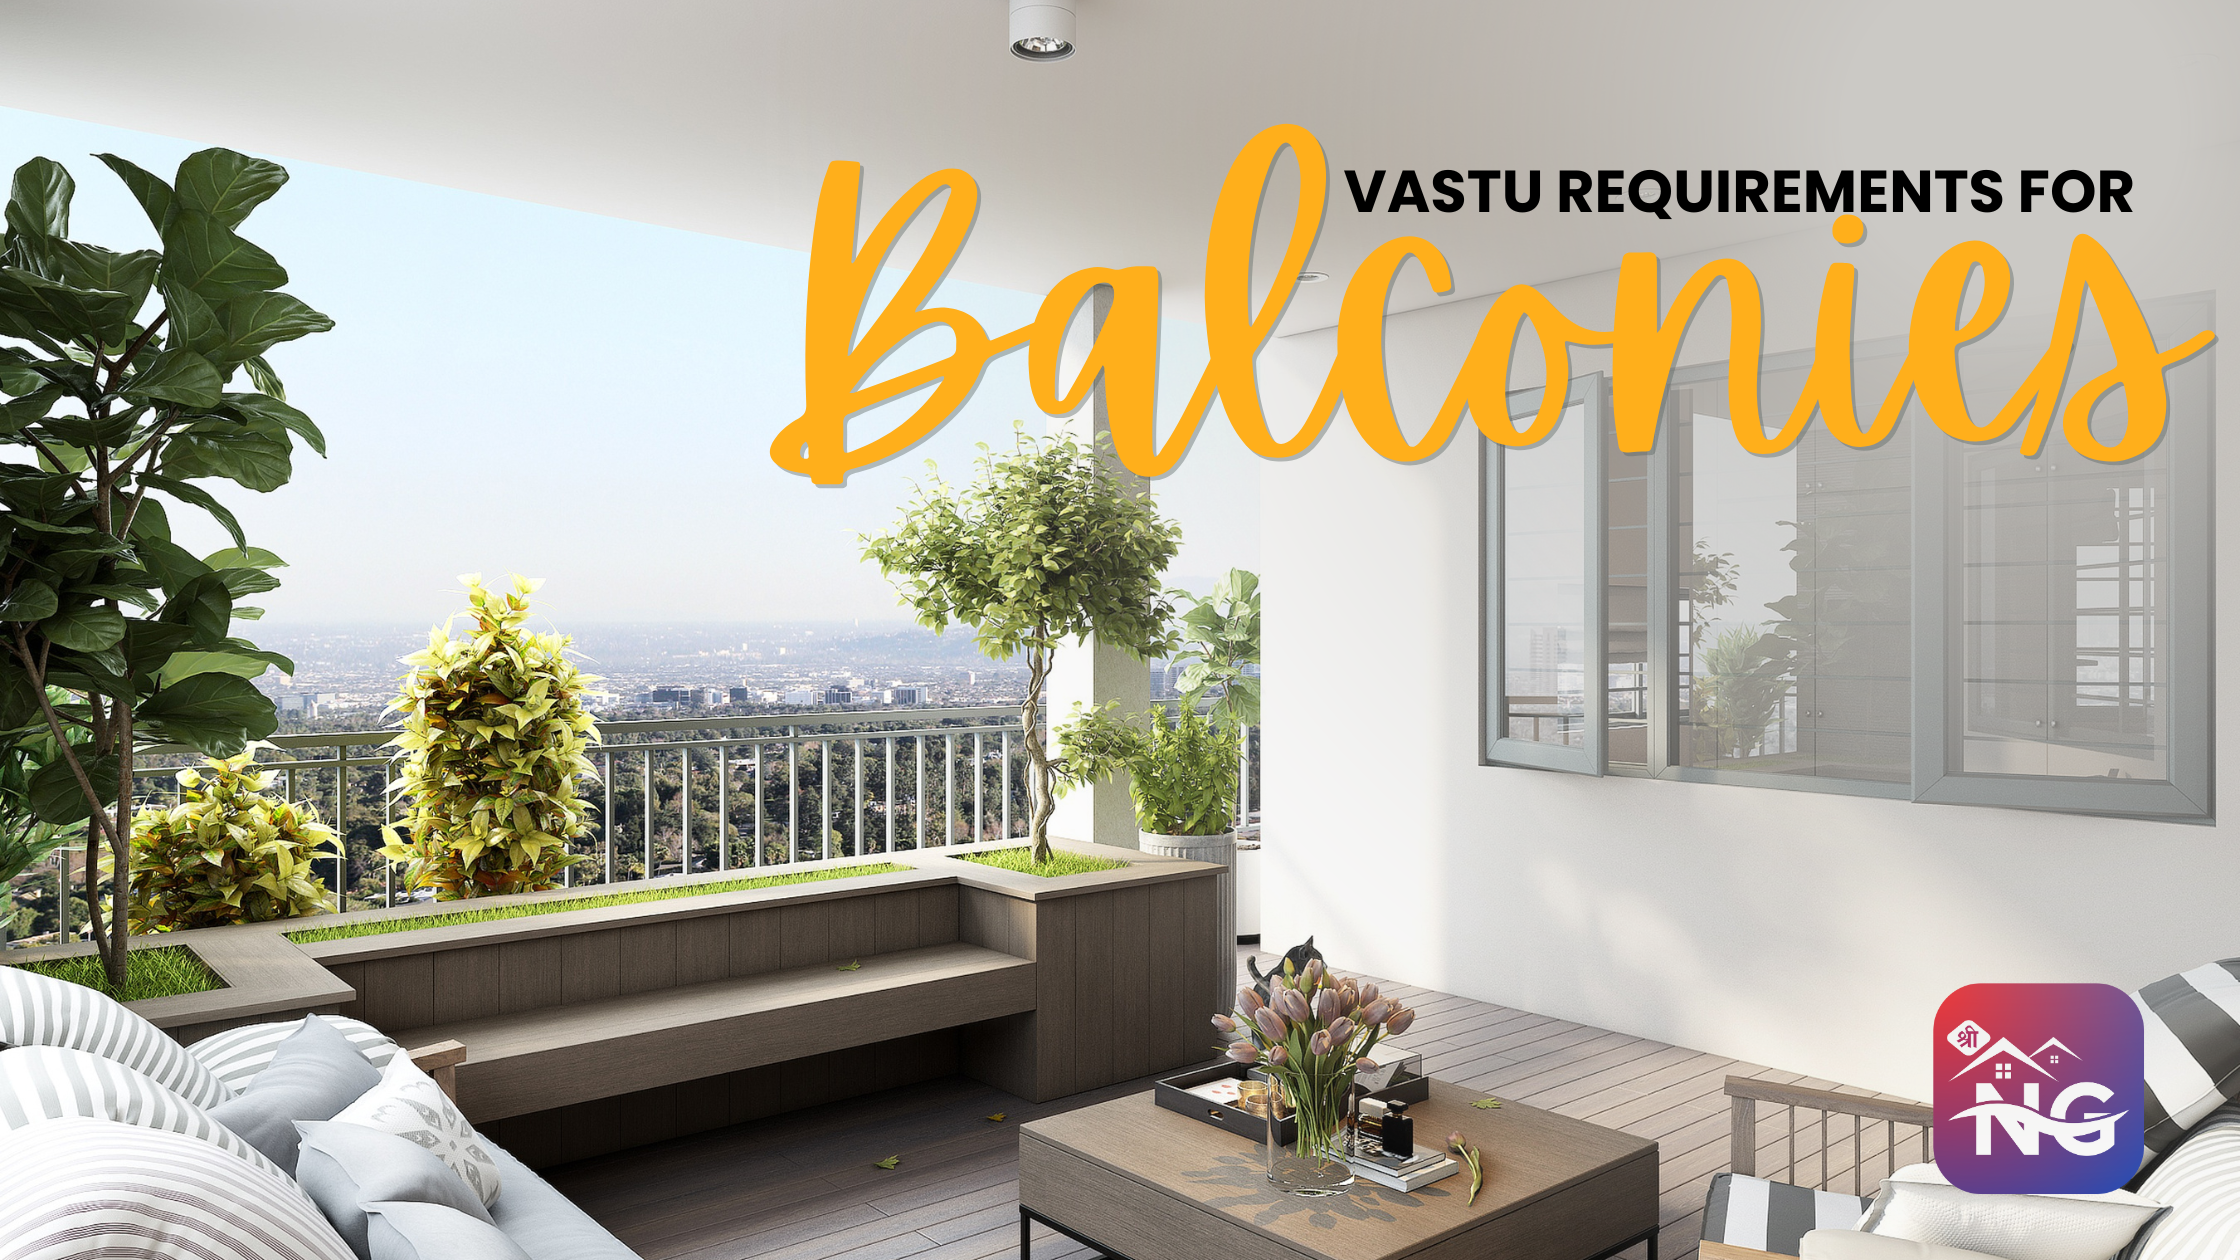 Vastu Requirements for Balconies